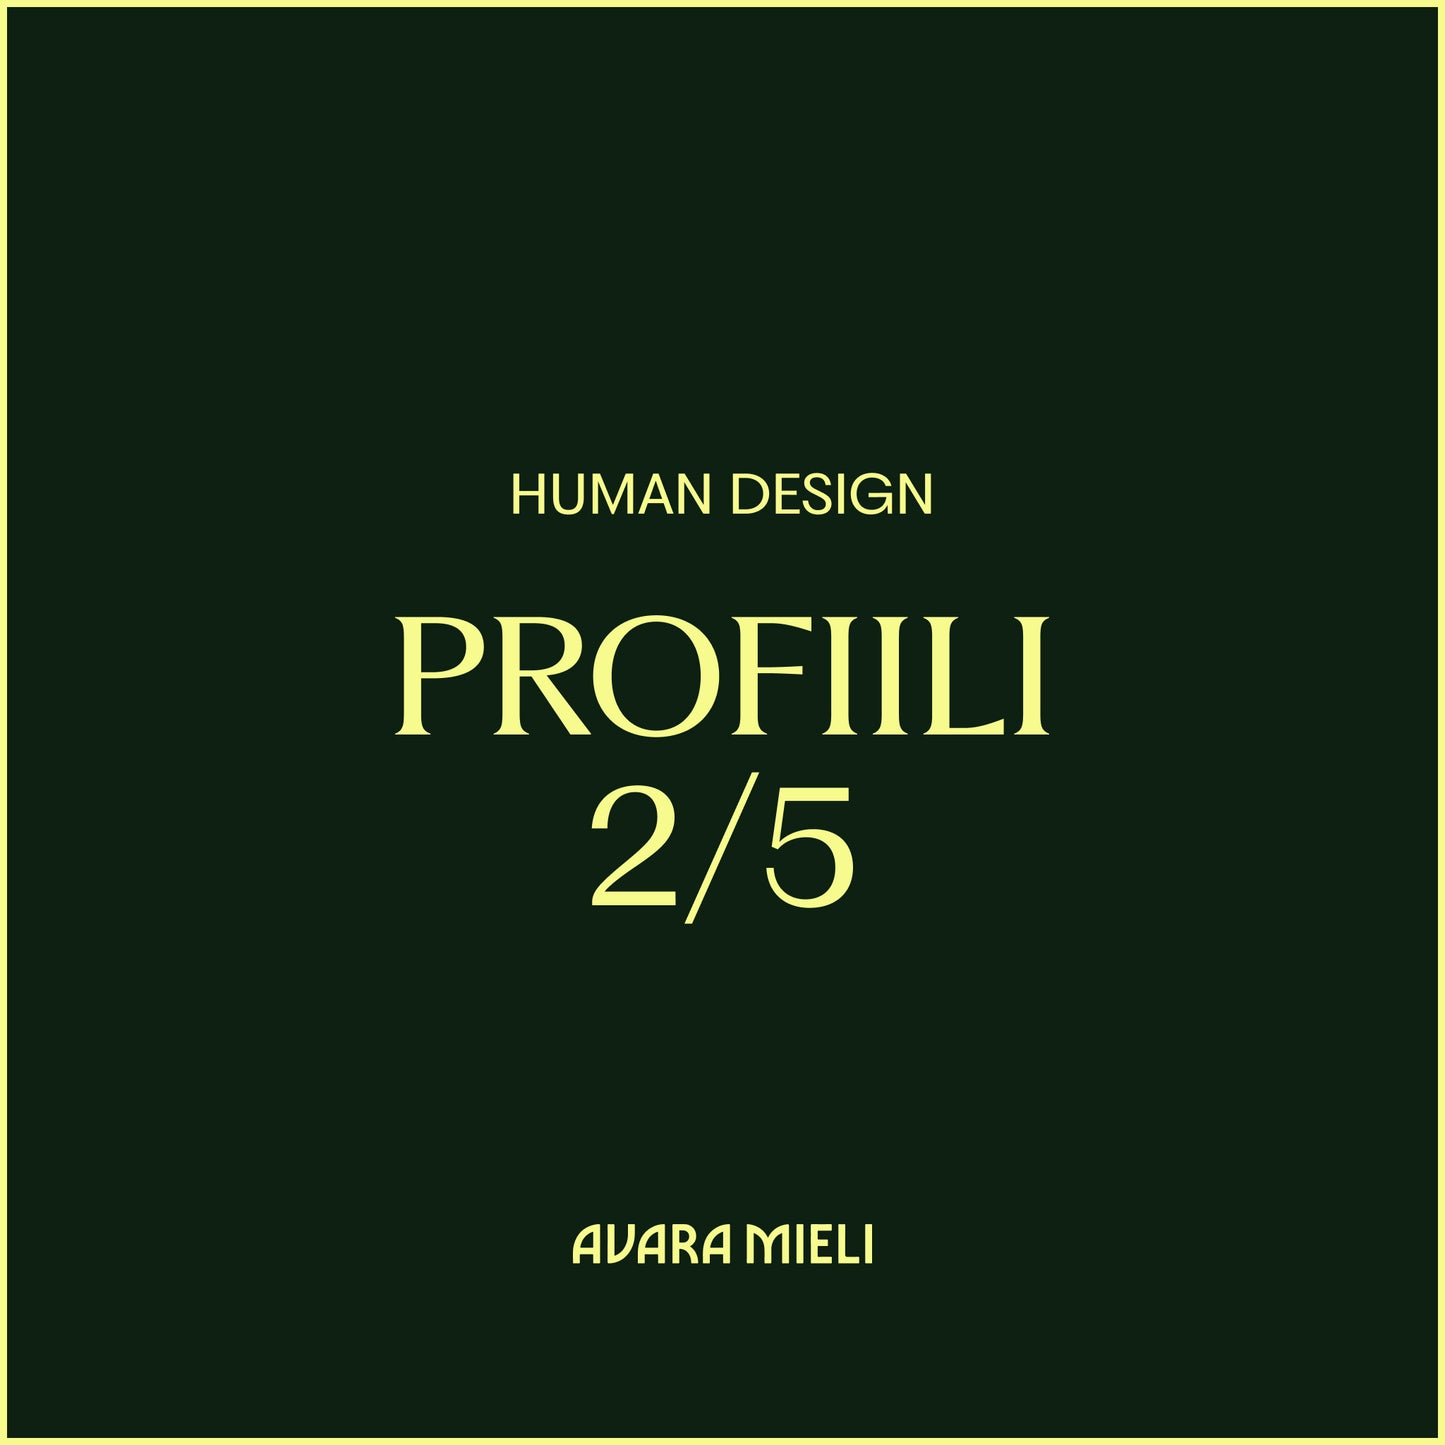 Human Design Profiili 2/5